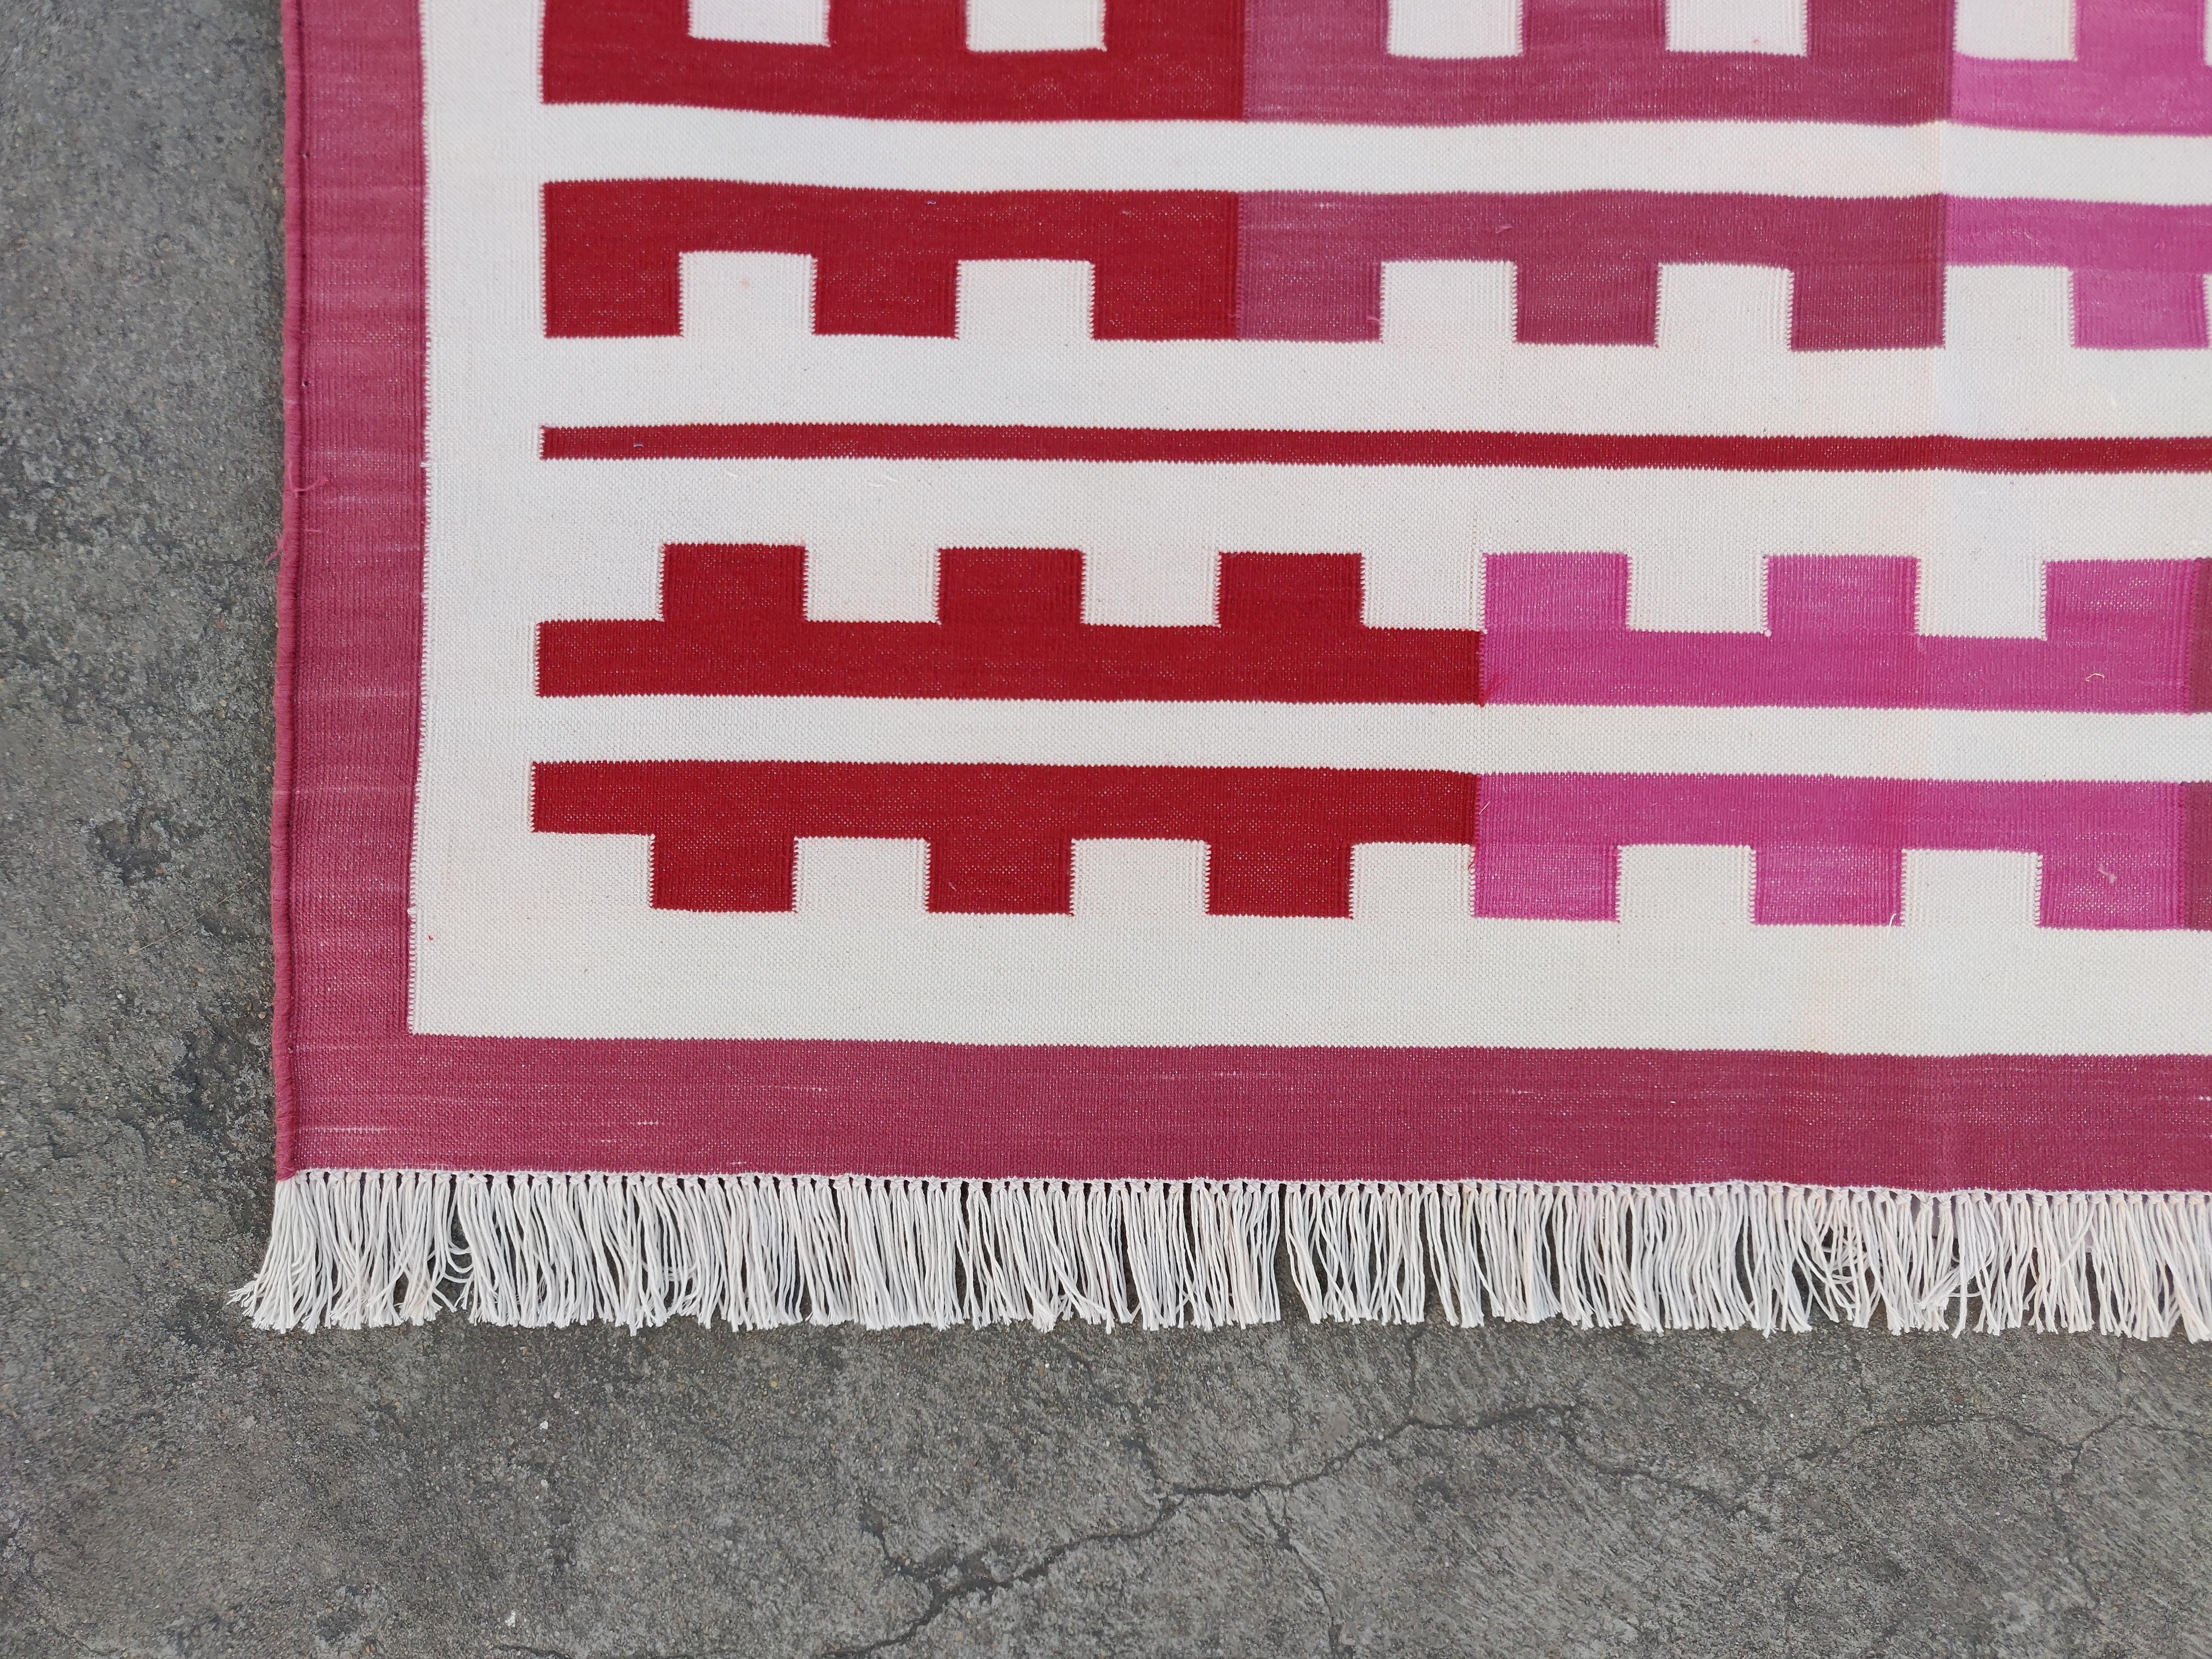 8x10 flat weave rug